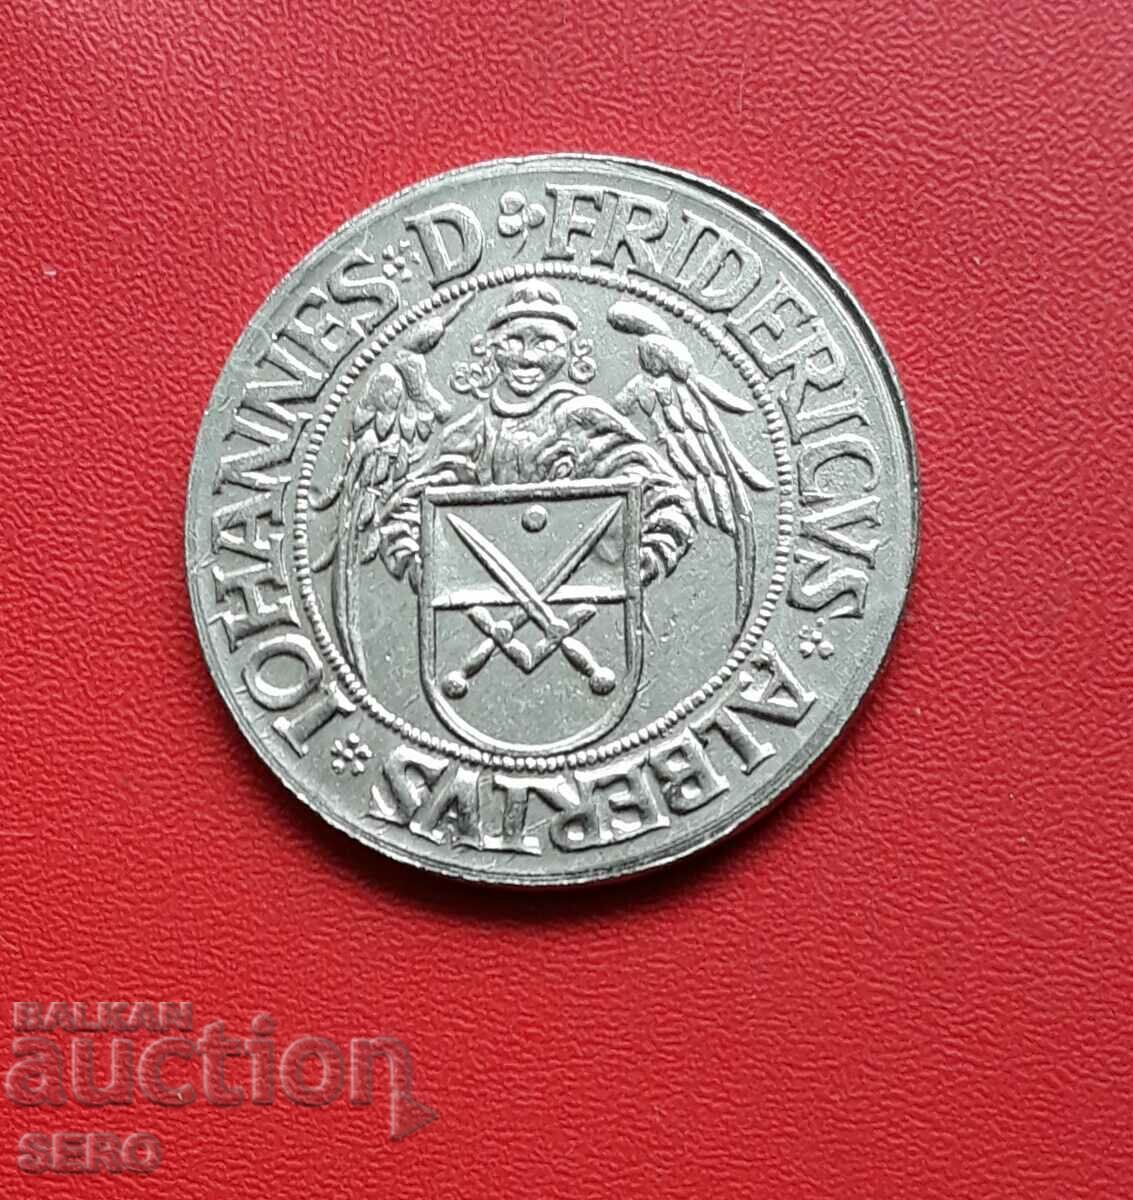 Republica Cehă - copie a unei monede cehe medievale